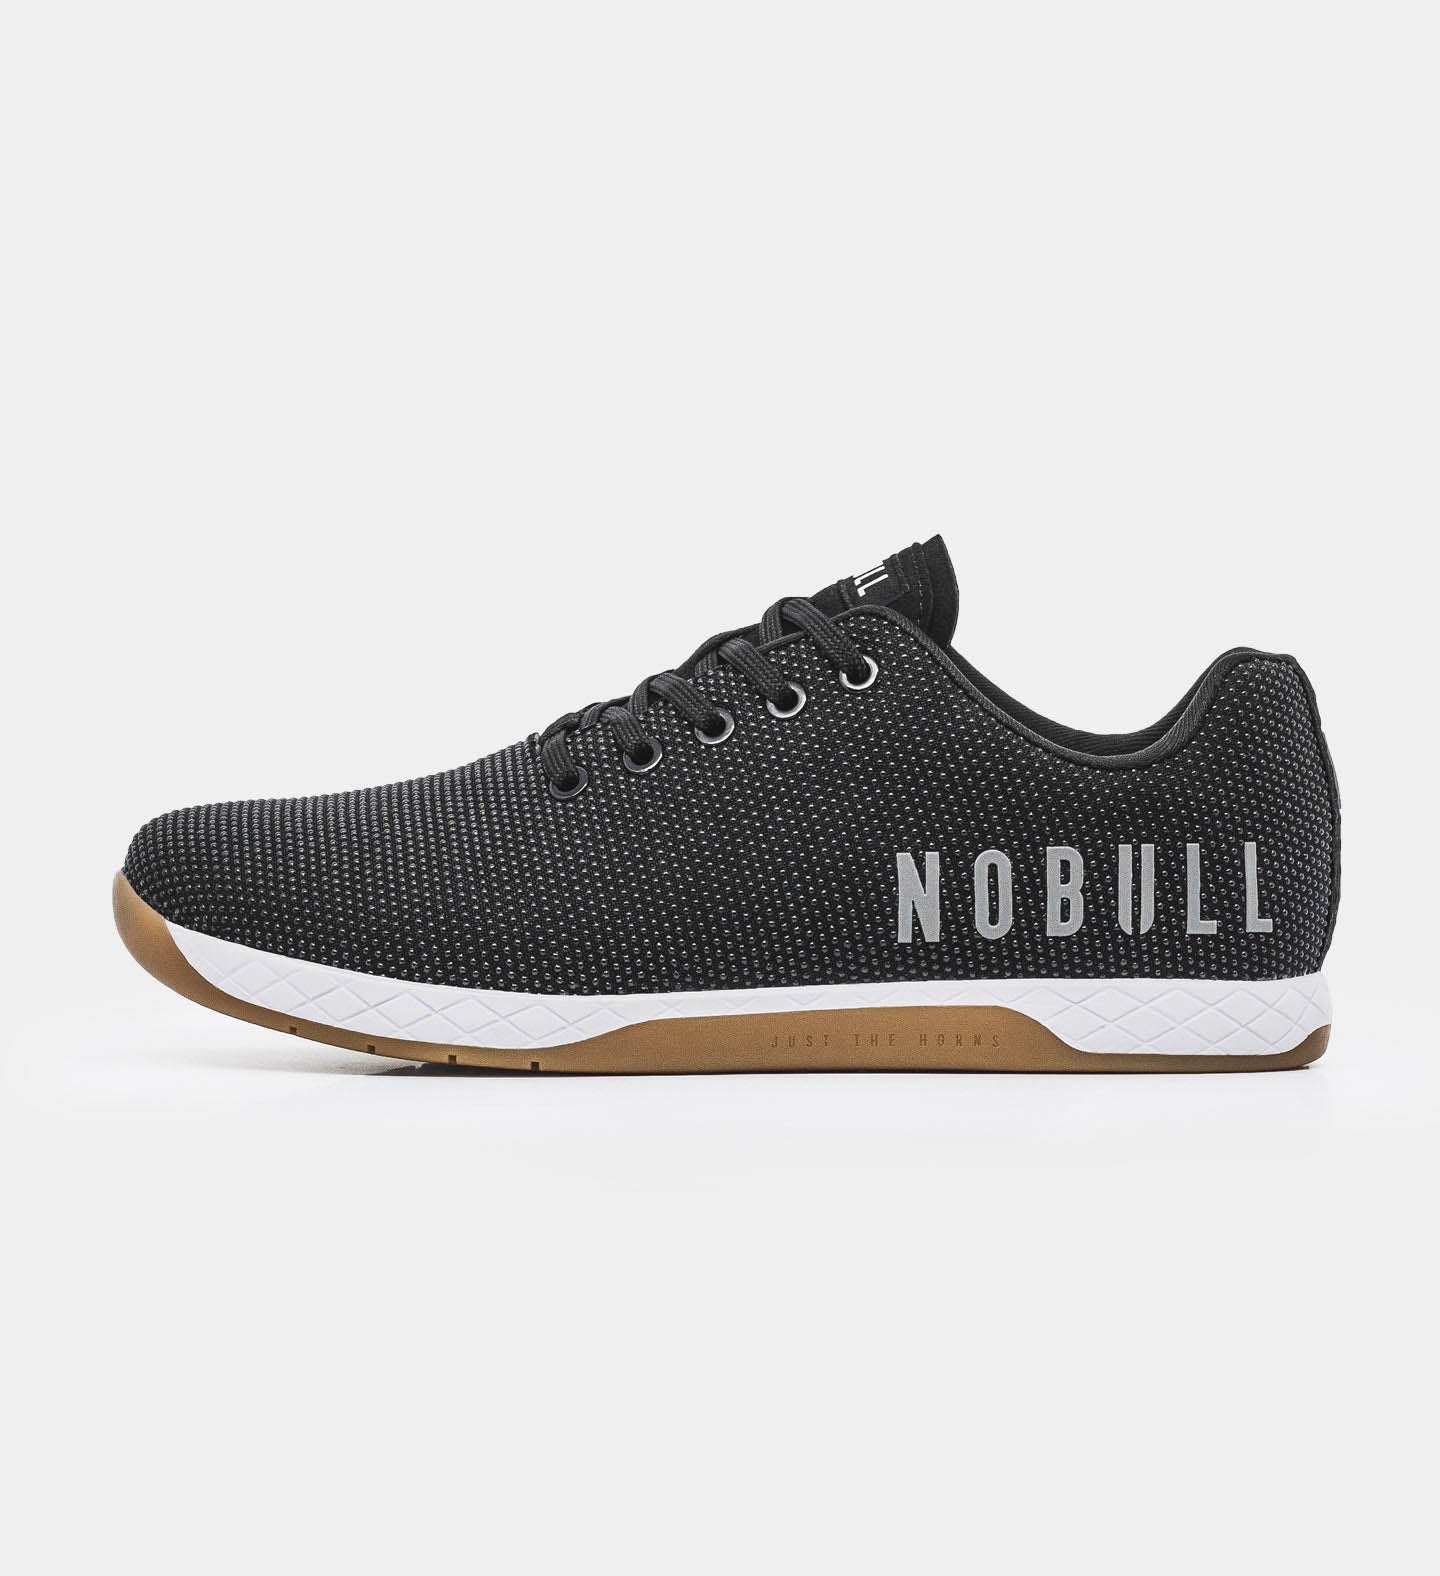 NOBULL OUTWORK (Trainer) - Black / Gum